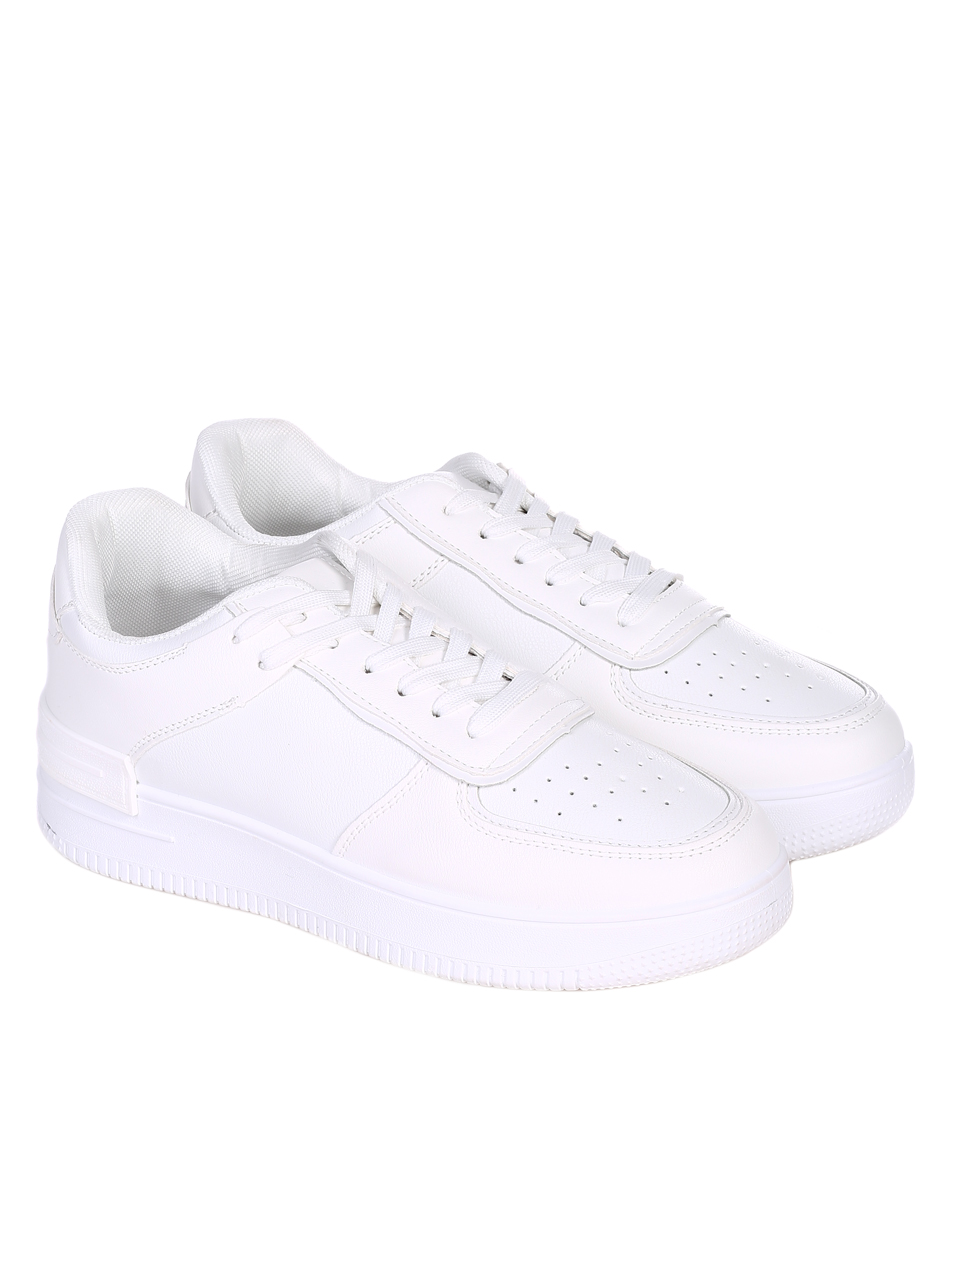 Ежедневни мъжки обувки в бяло 7U-22009 white